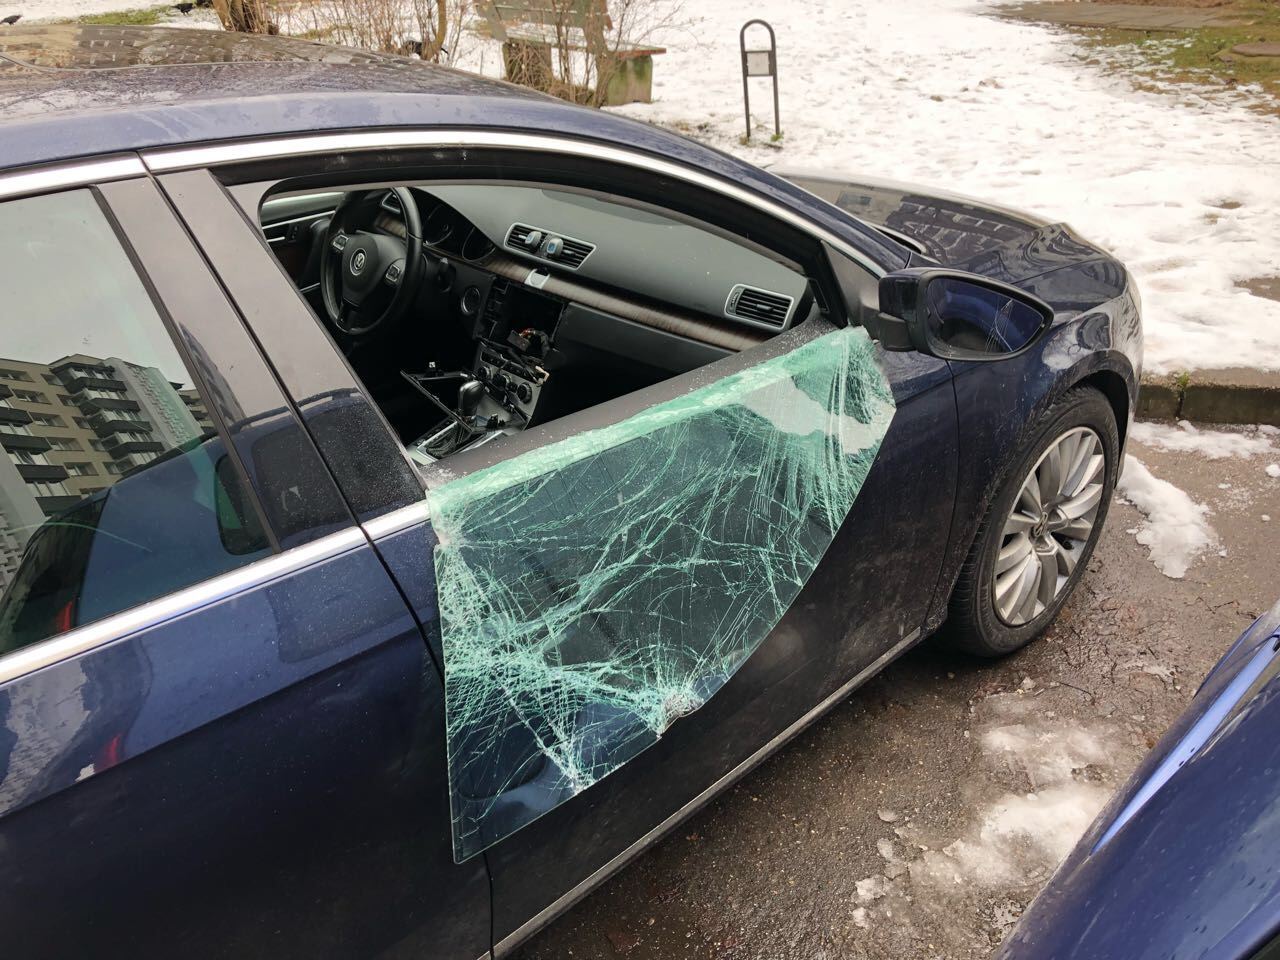 isdauztas automobilio stiklas automobilis vagyste apvogtas